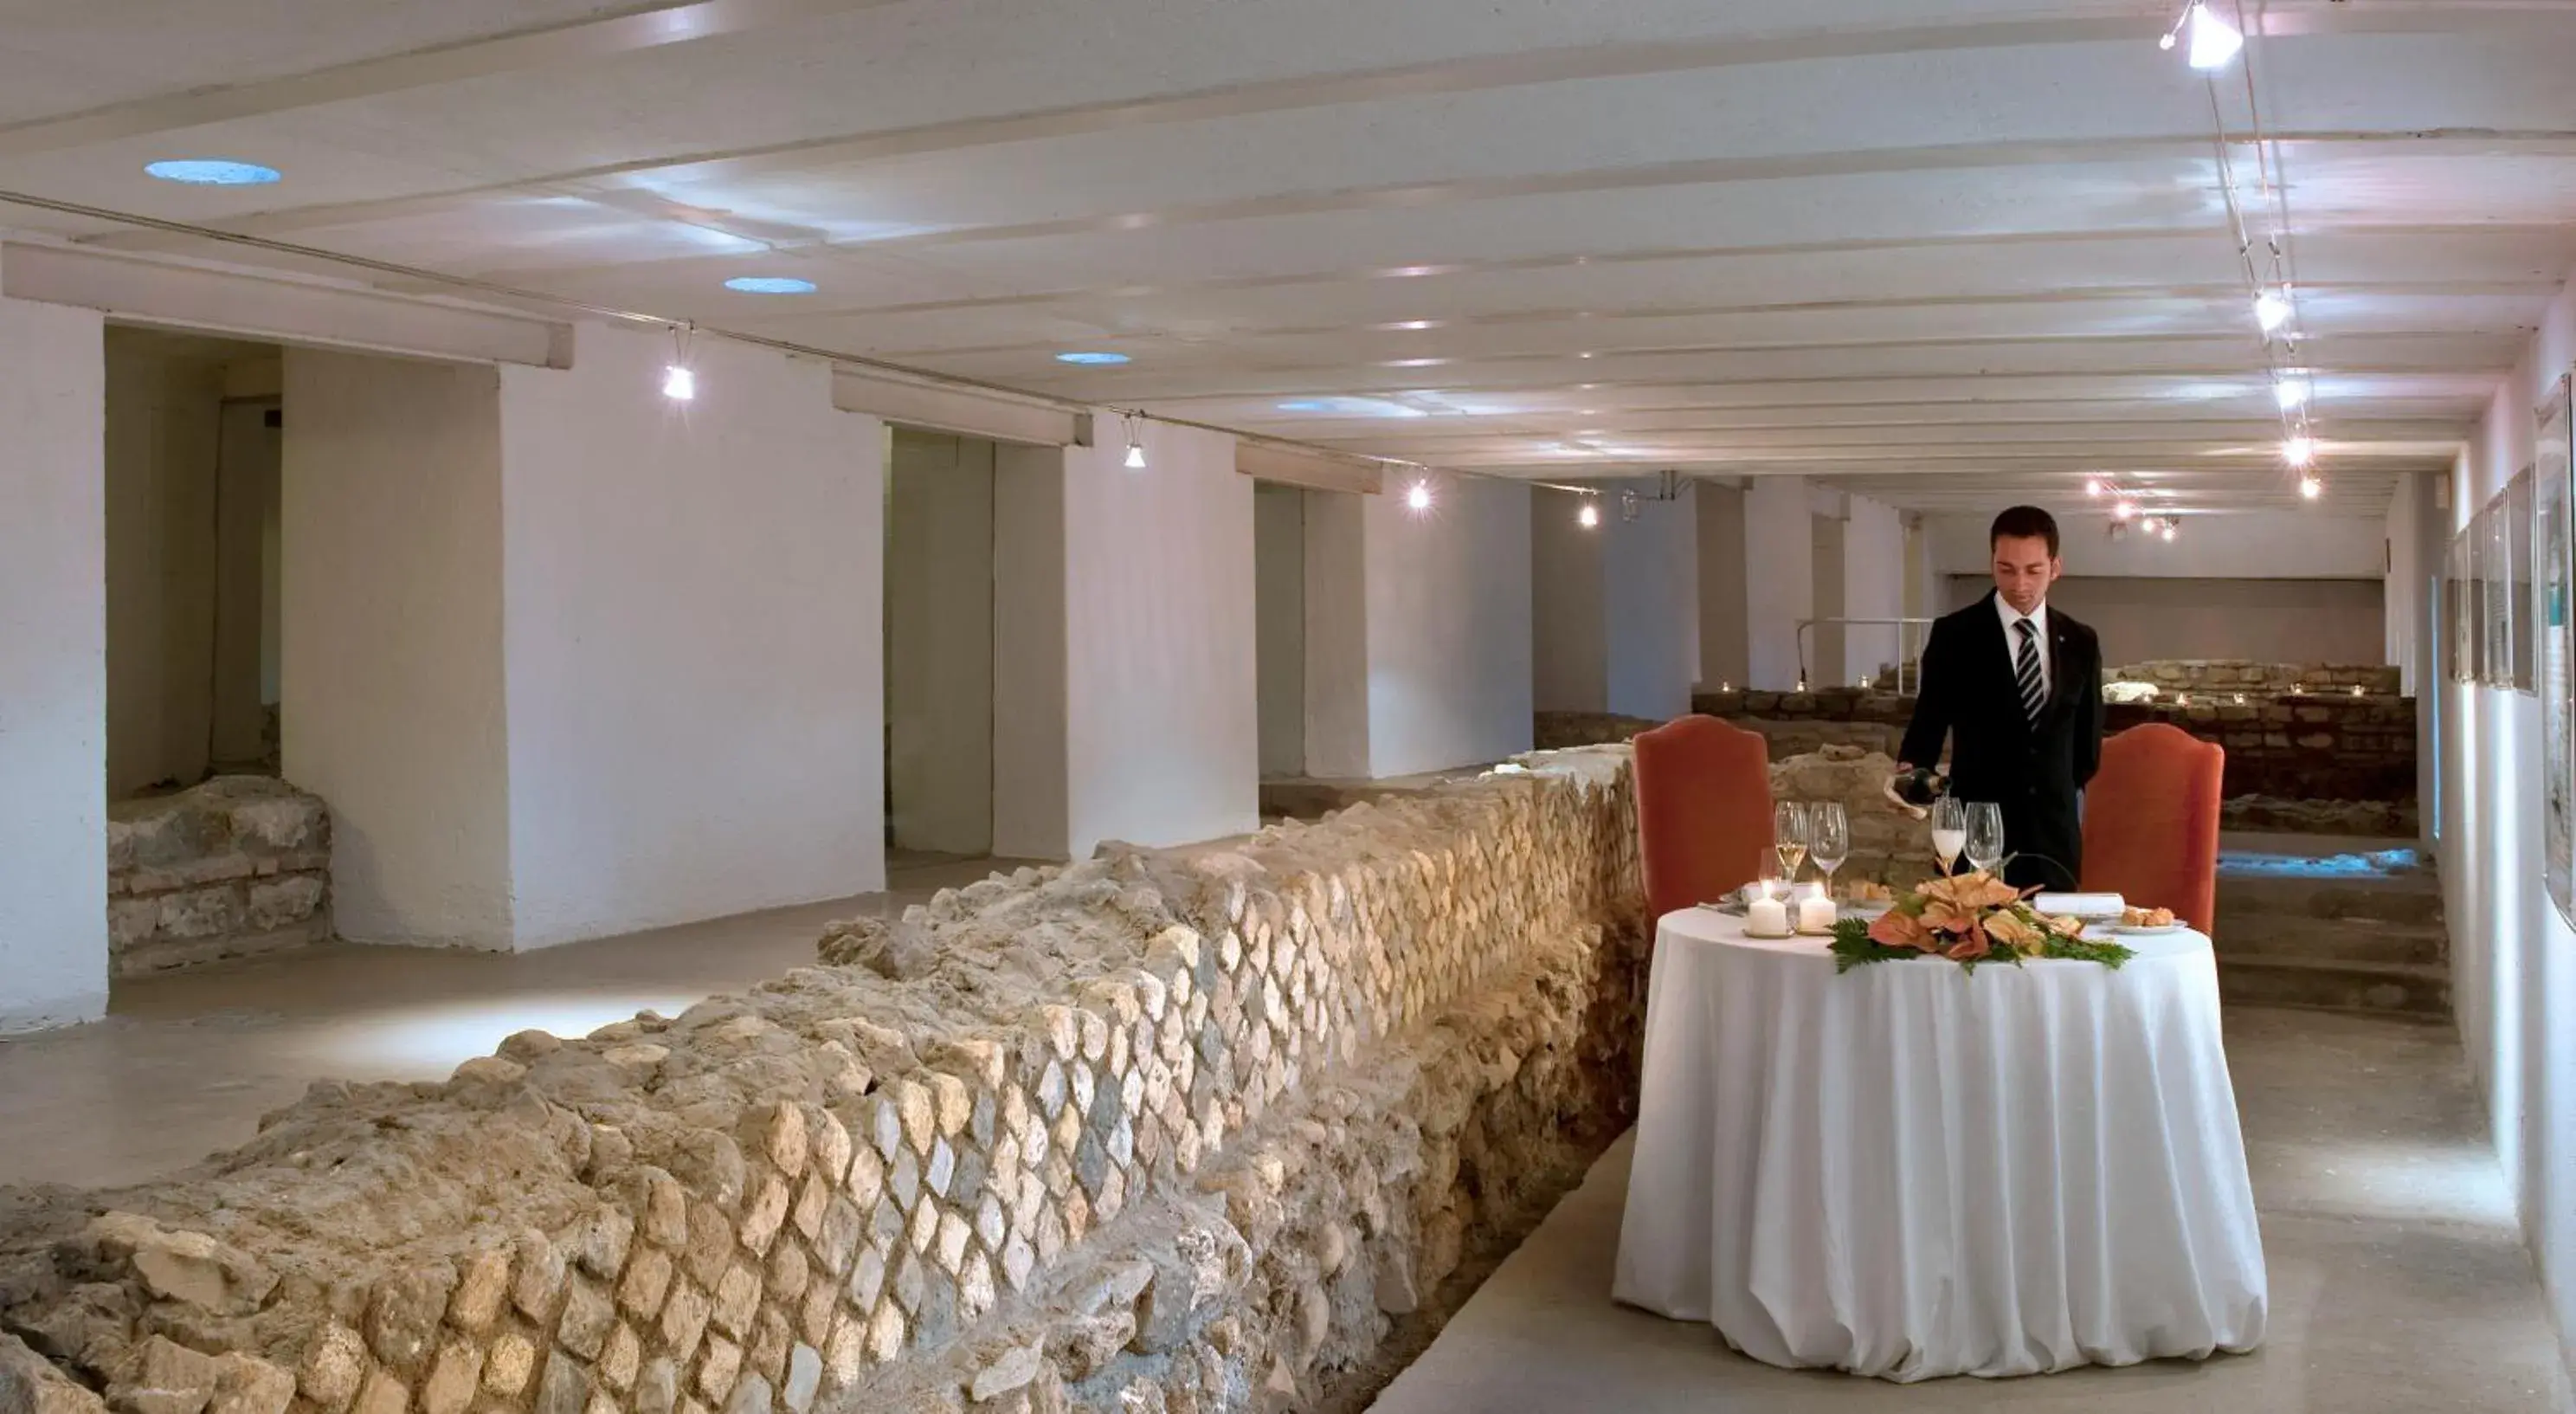 Banquet/Function facilities, Banquet Facilities in La Posta Vecchia Hotel